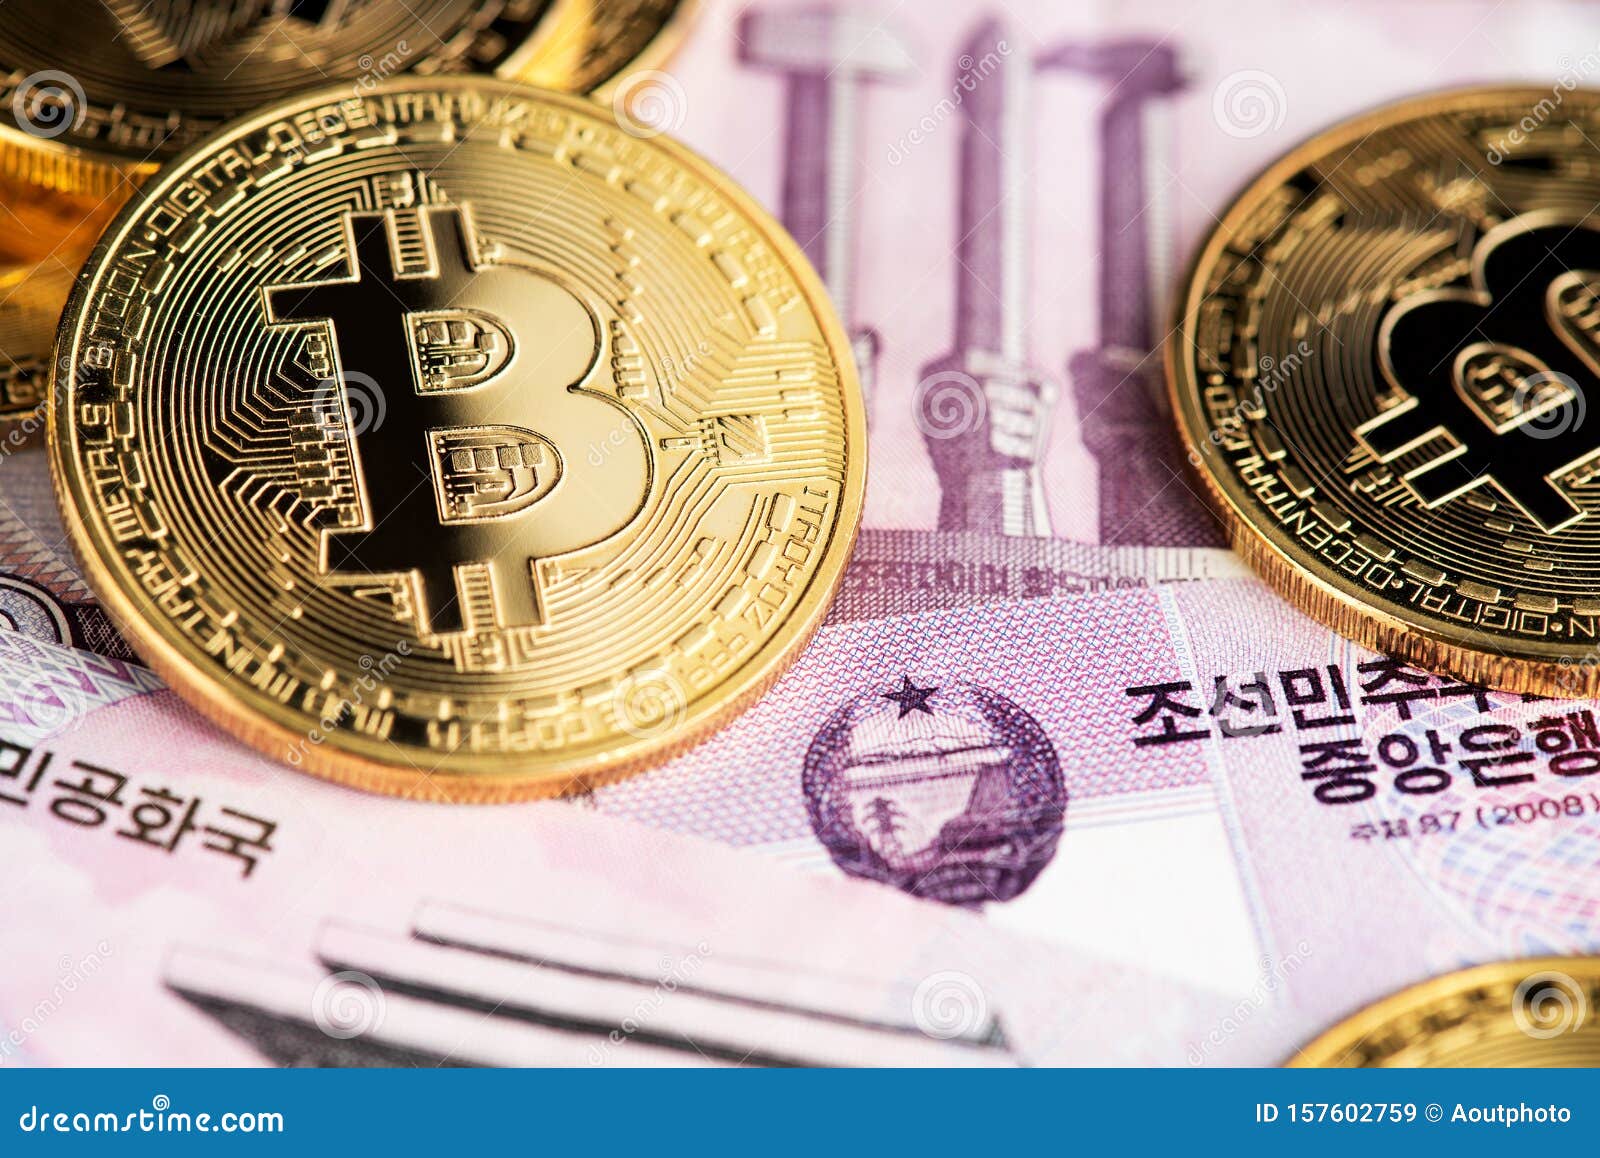 Bitcoin este din nou în scădere puternică după ce Coreea de Sud | solitaire-online.ro